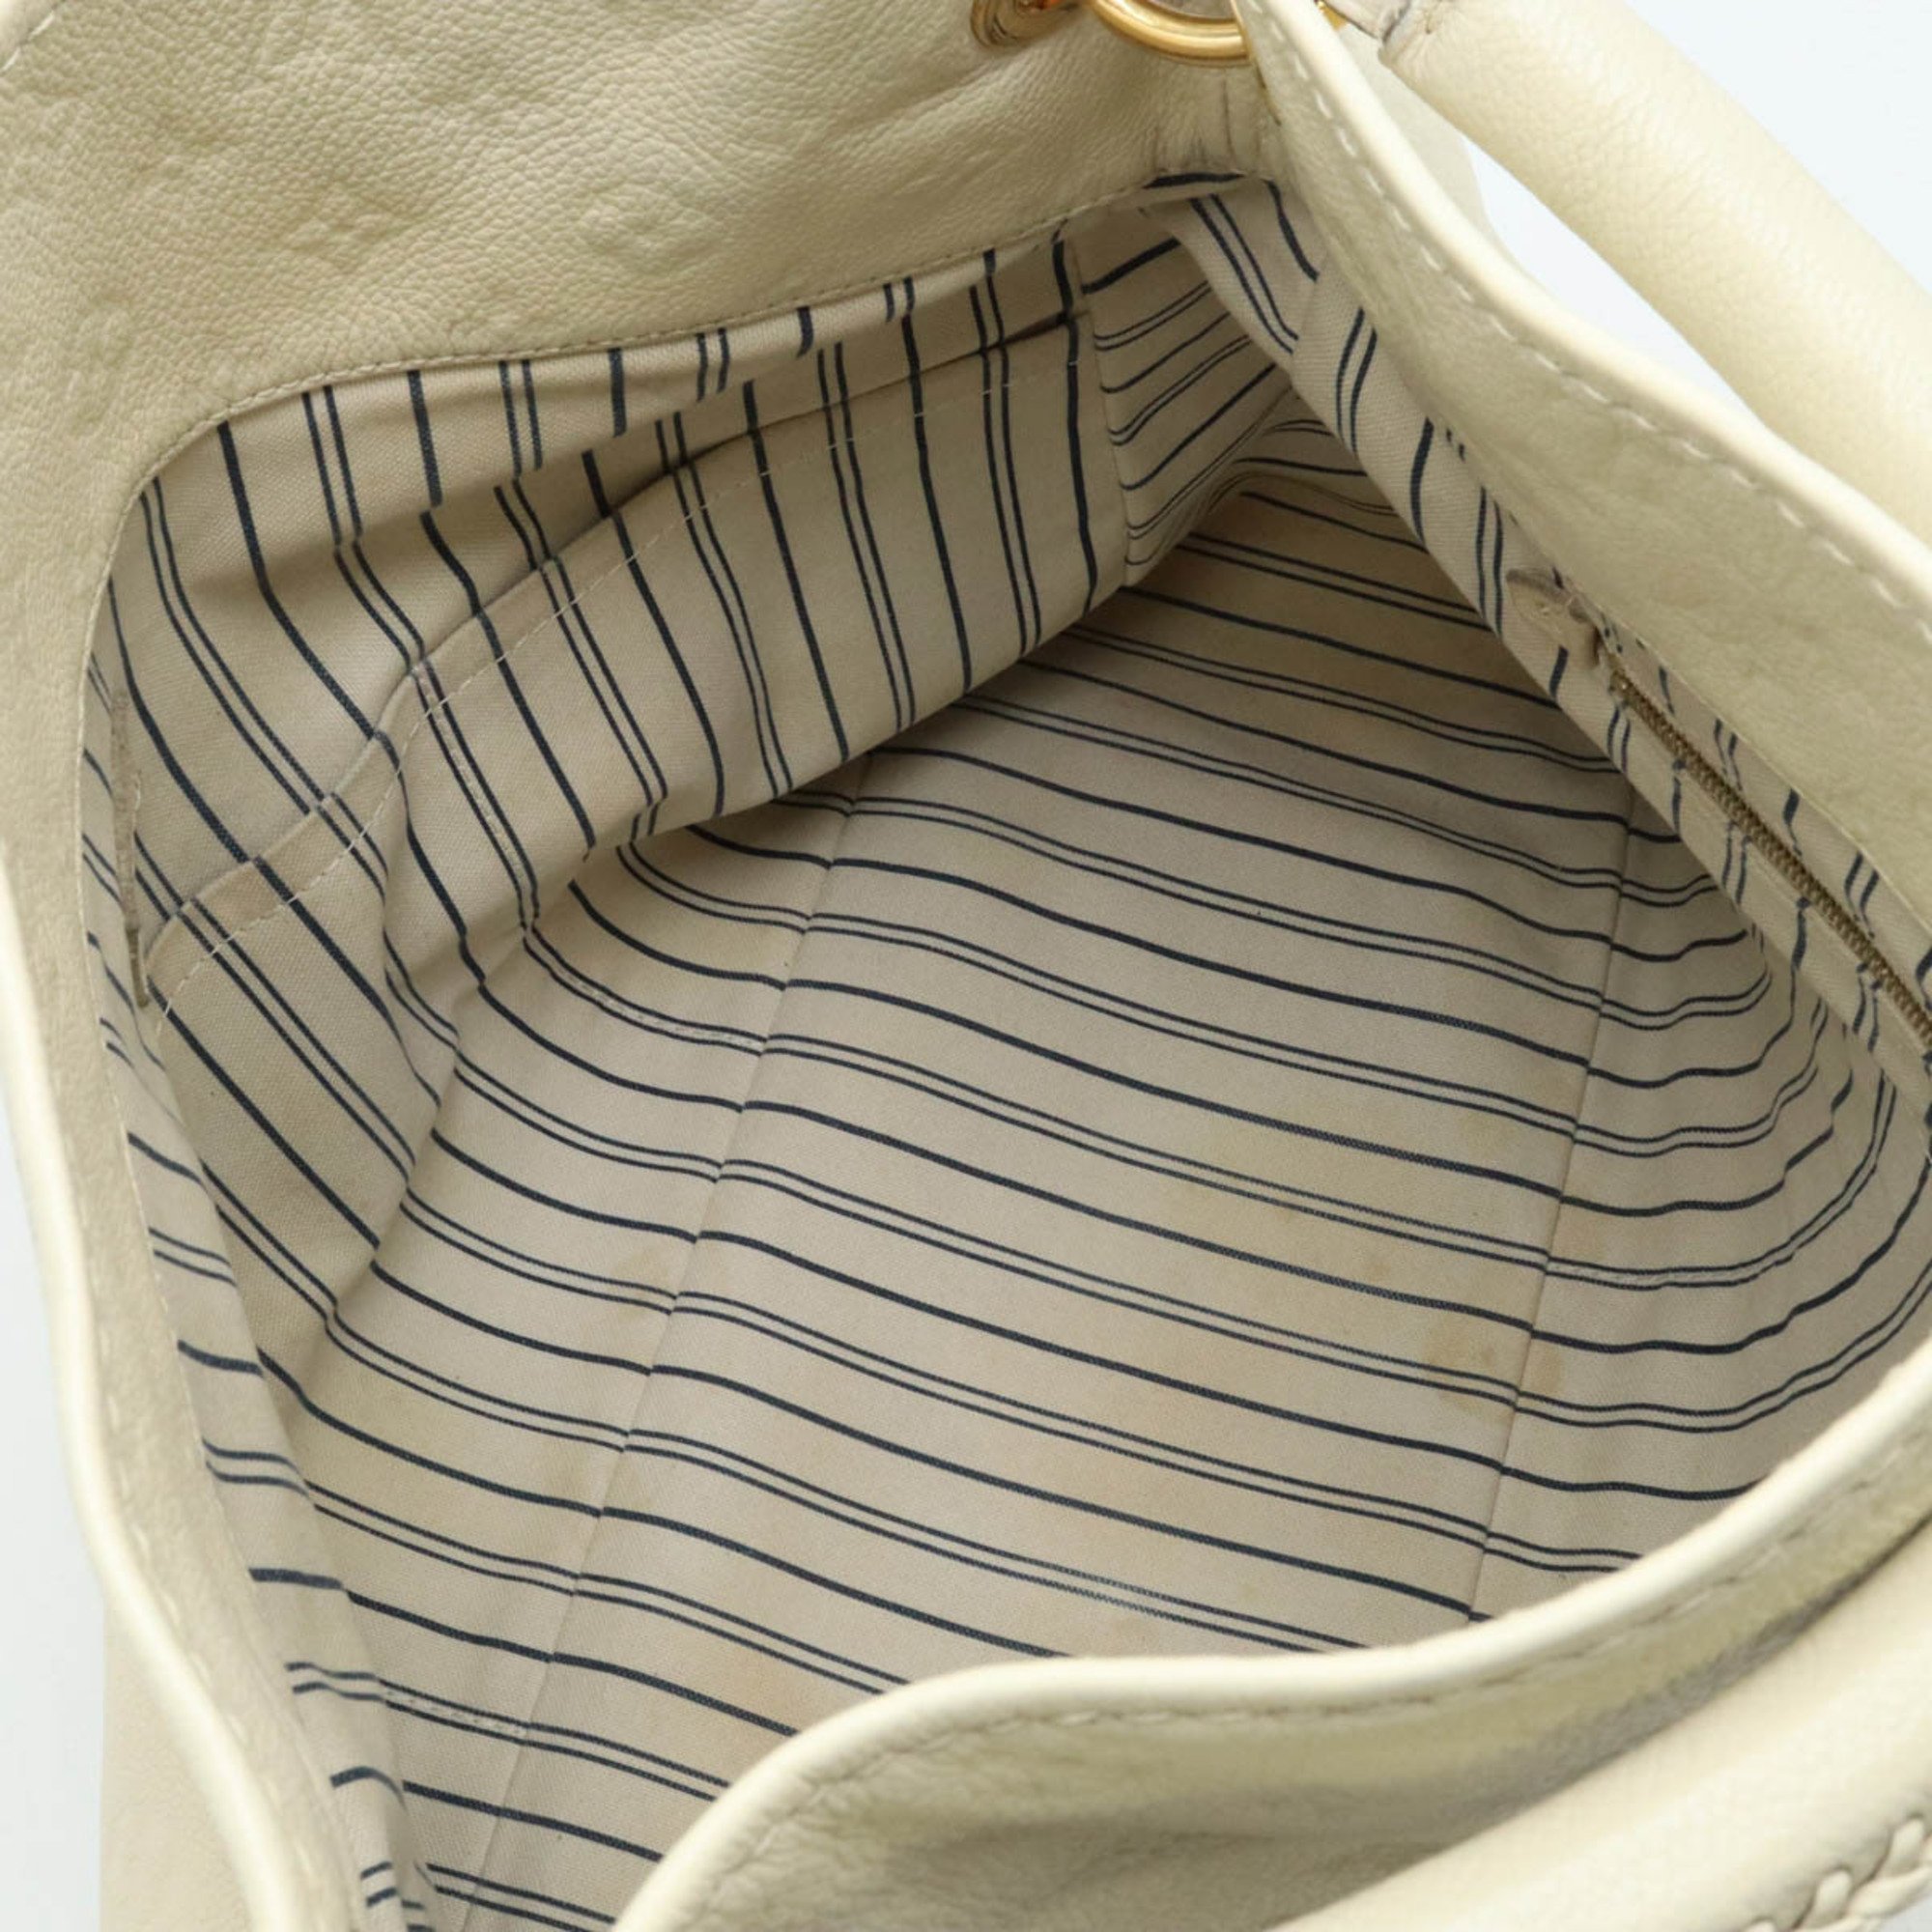 LOUIS VUITTON Louis Vuitton Monogram Empreinte Artsy MM Shoulder Bag Tote Leather Neige White M93449